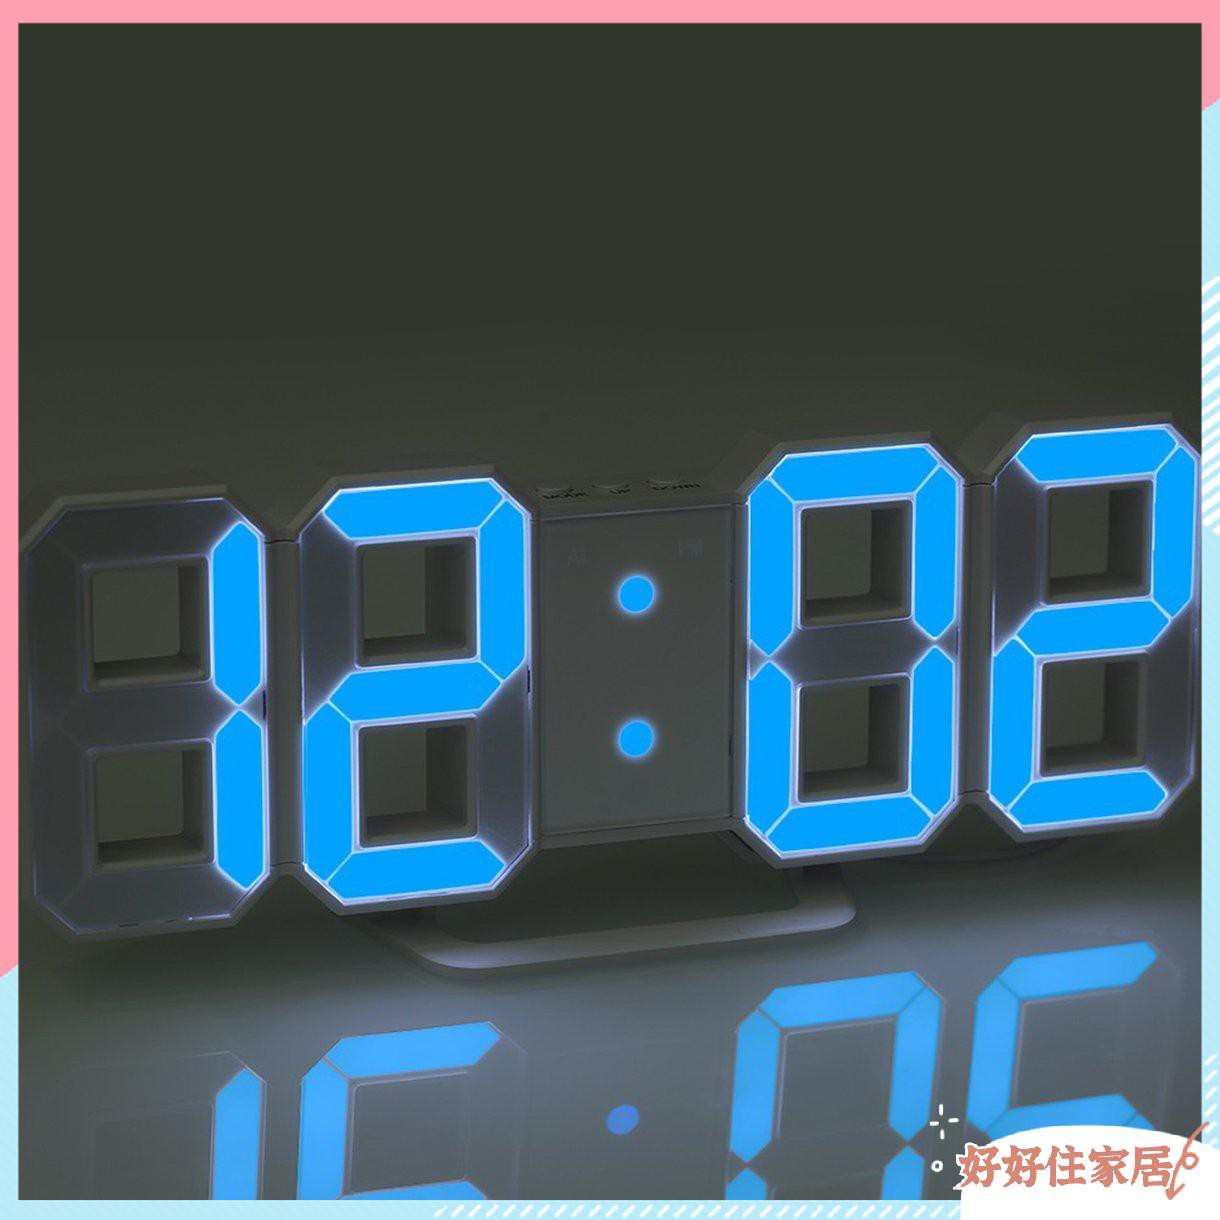 Đồng hồ báo thức kĩ thuật số có đèn led hiện đại độc đáo